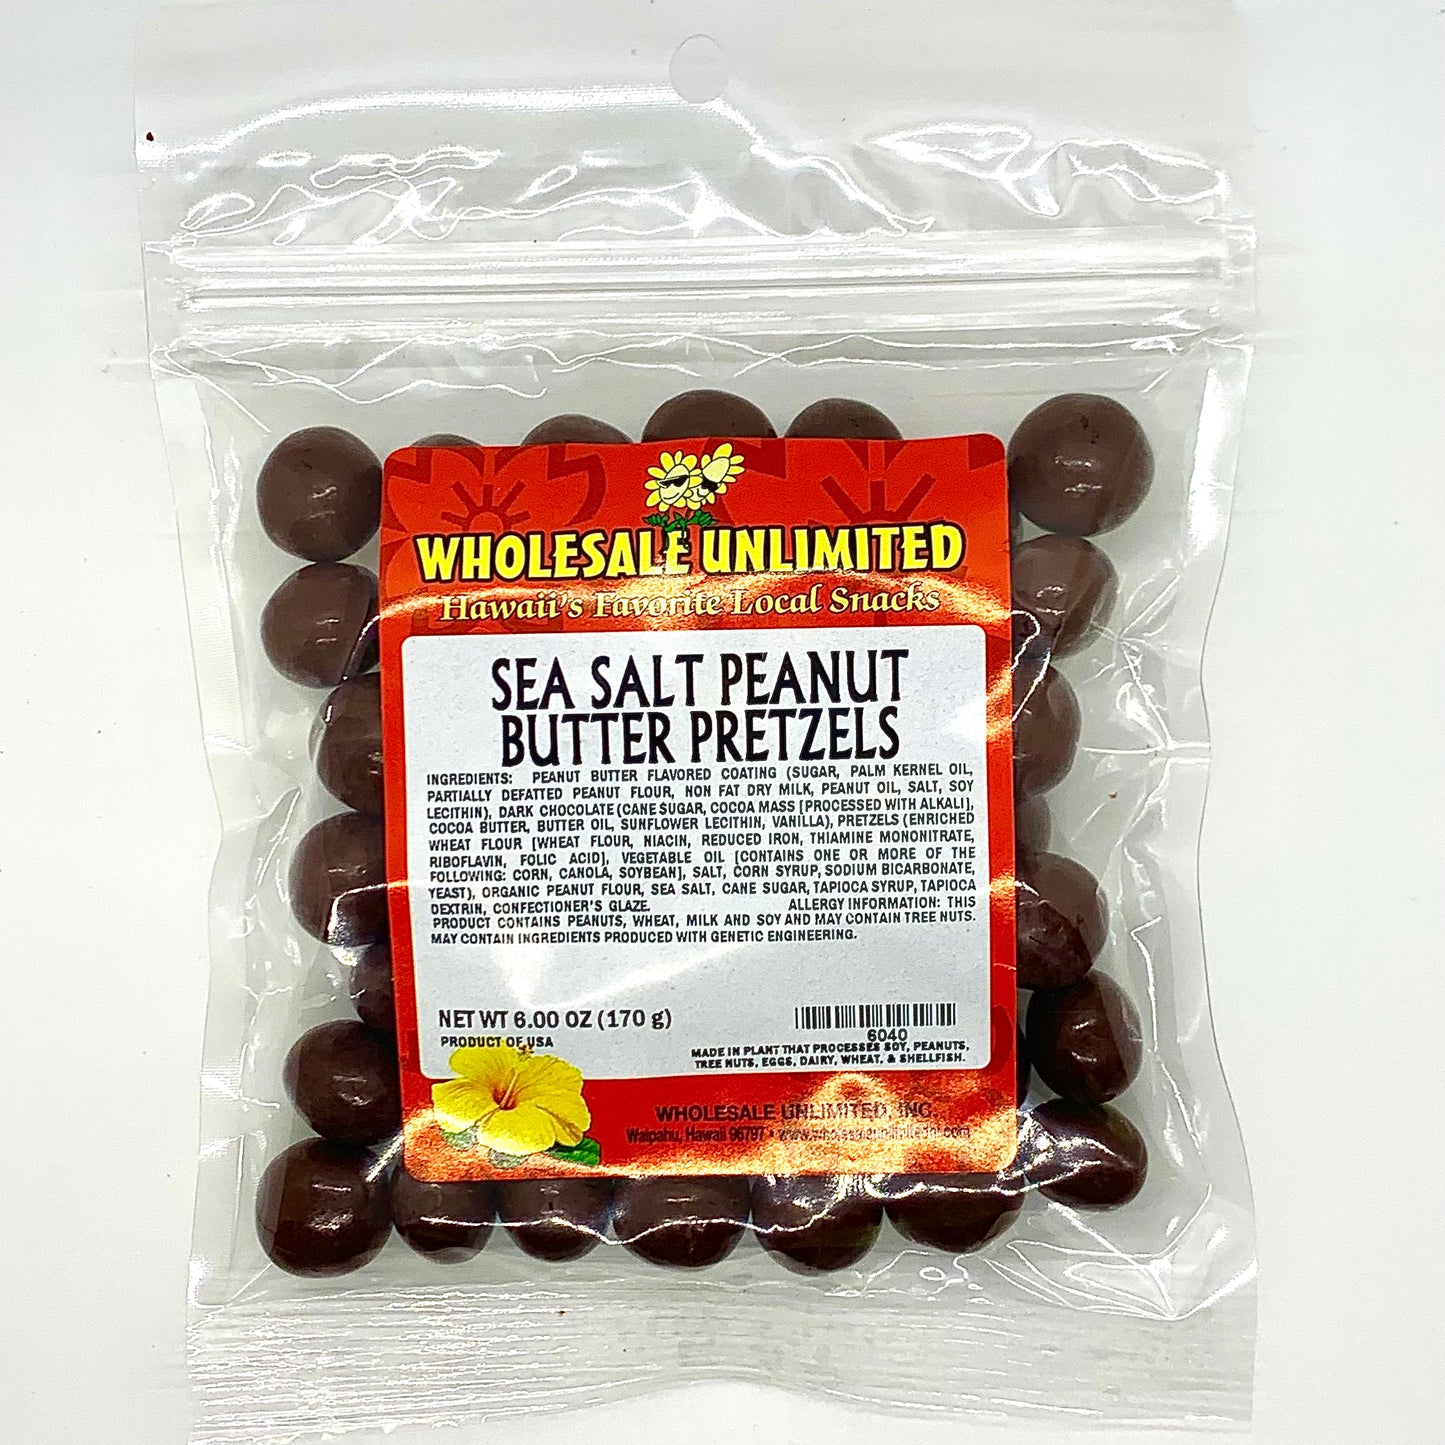 (NEW) Sea Salt Peanut Butter Pretzels - Wholesale Unlimited Inc.